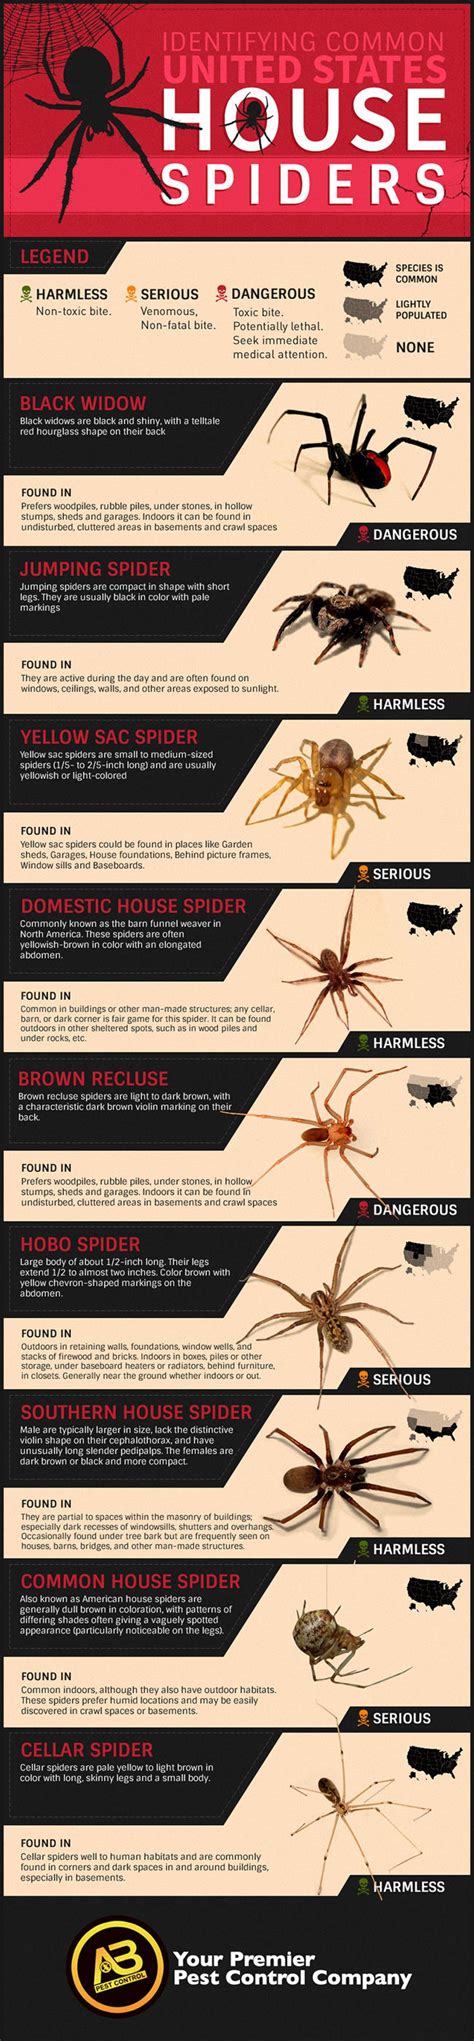 American House Spider Bite Saundra Gamboa